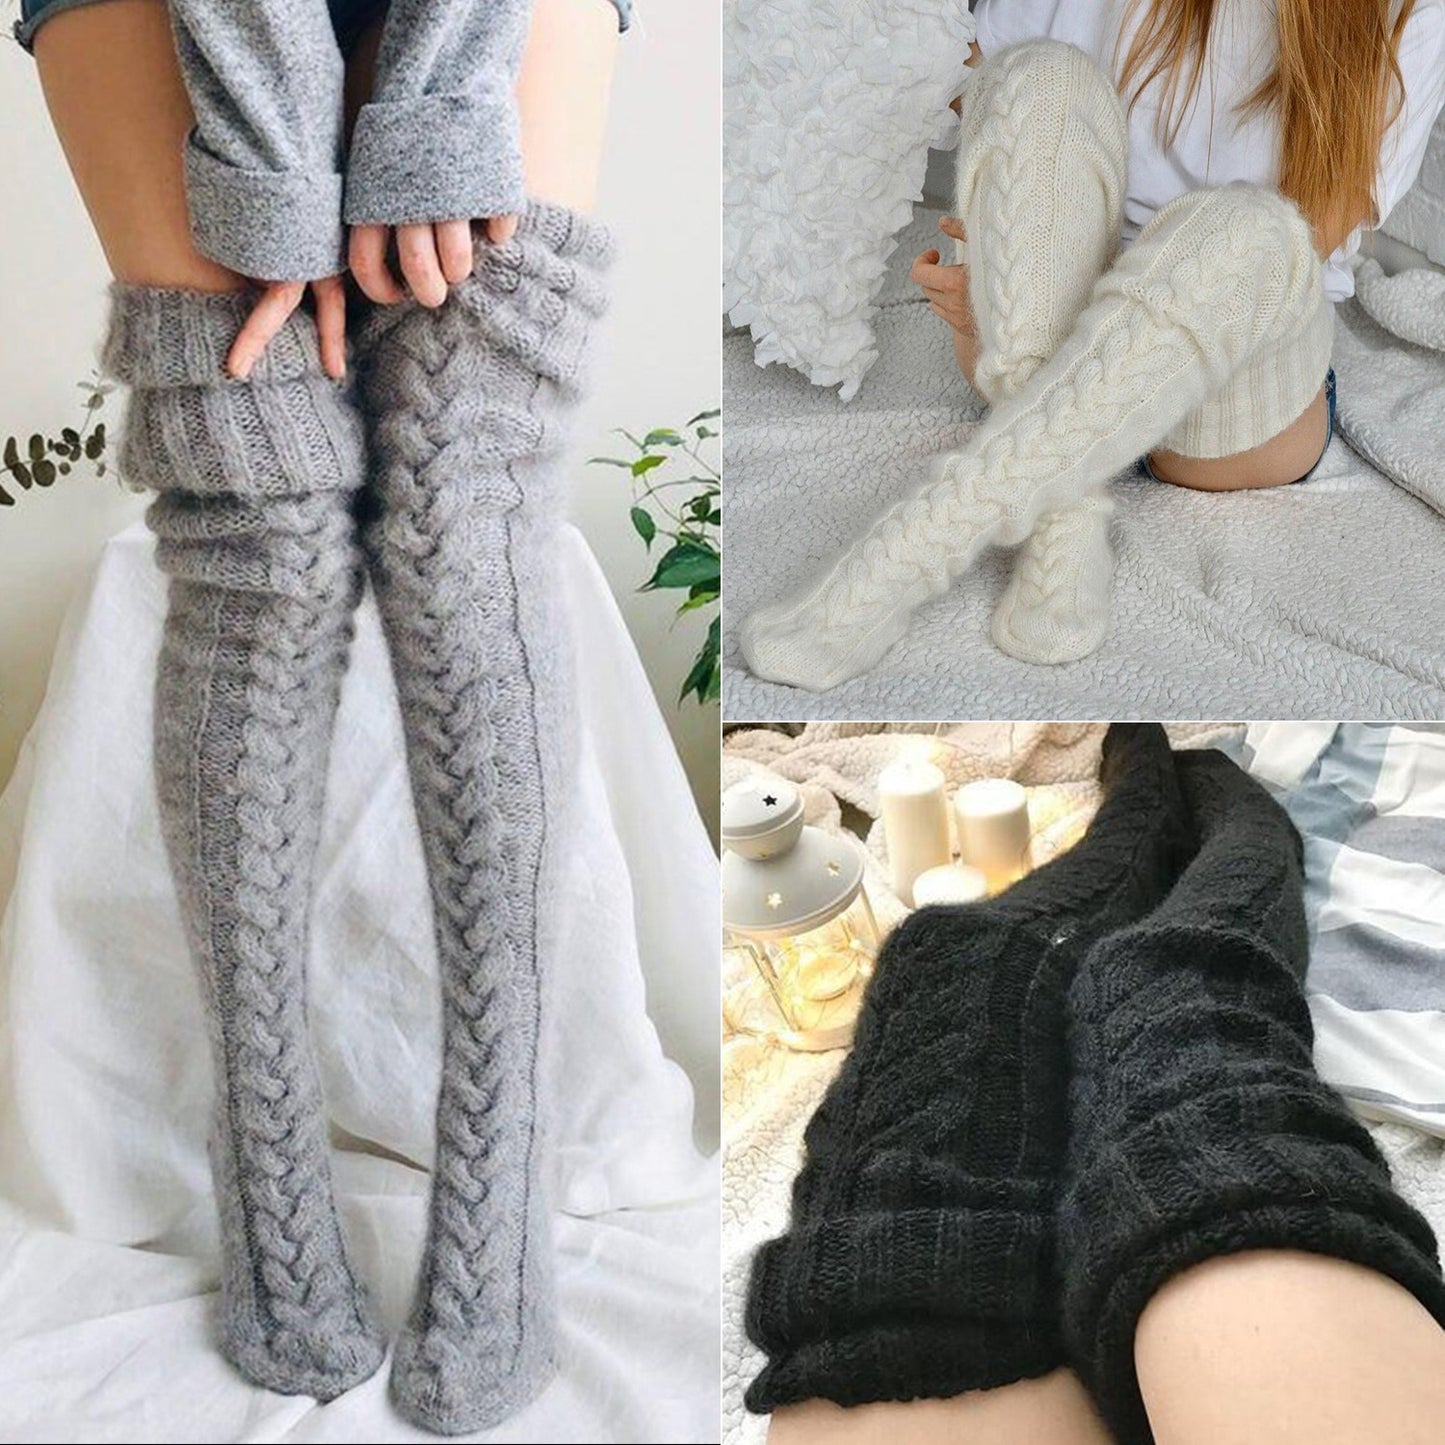 Knitting Knee Length Stockings